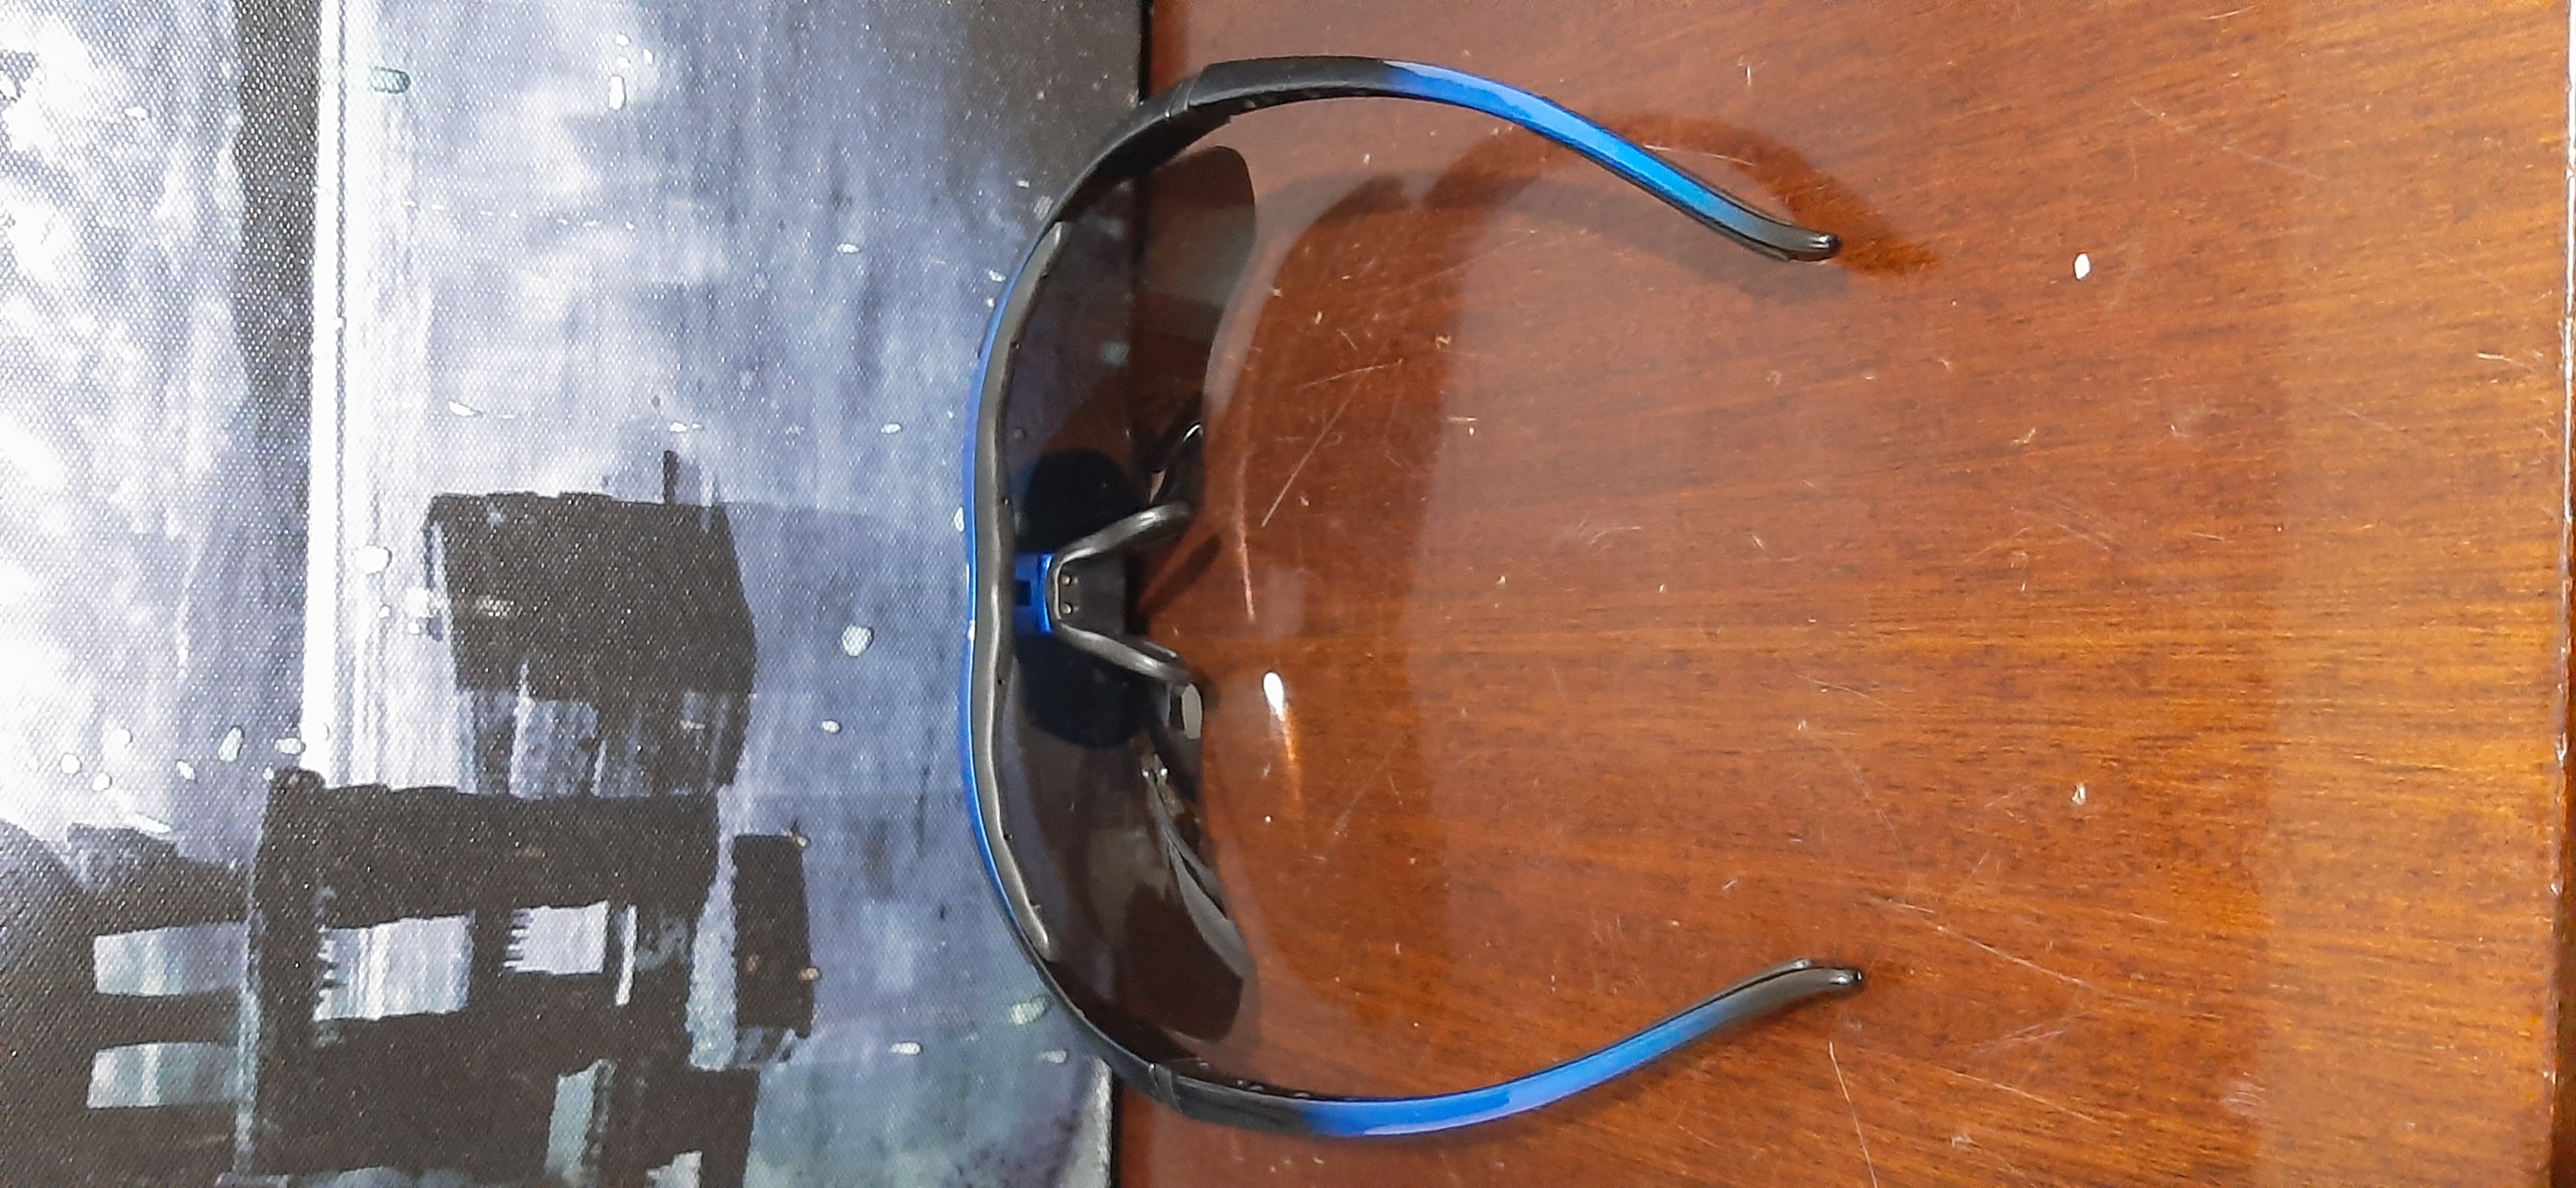 תמונה 4 ,ערכת משקפי שמש לגבר למכירה בנצרת עילית משקפיים  משקפי שמש